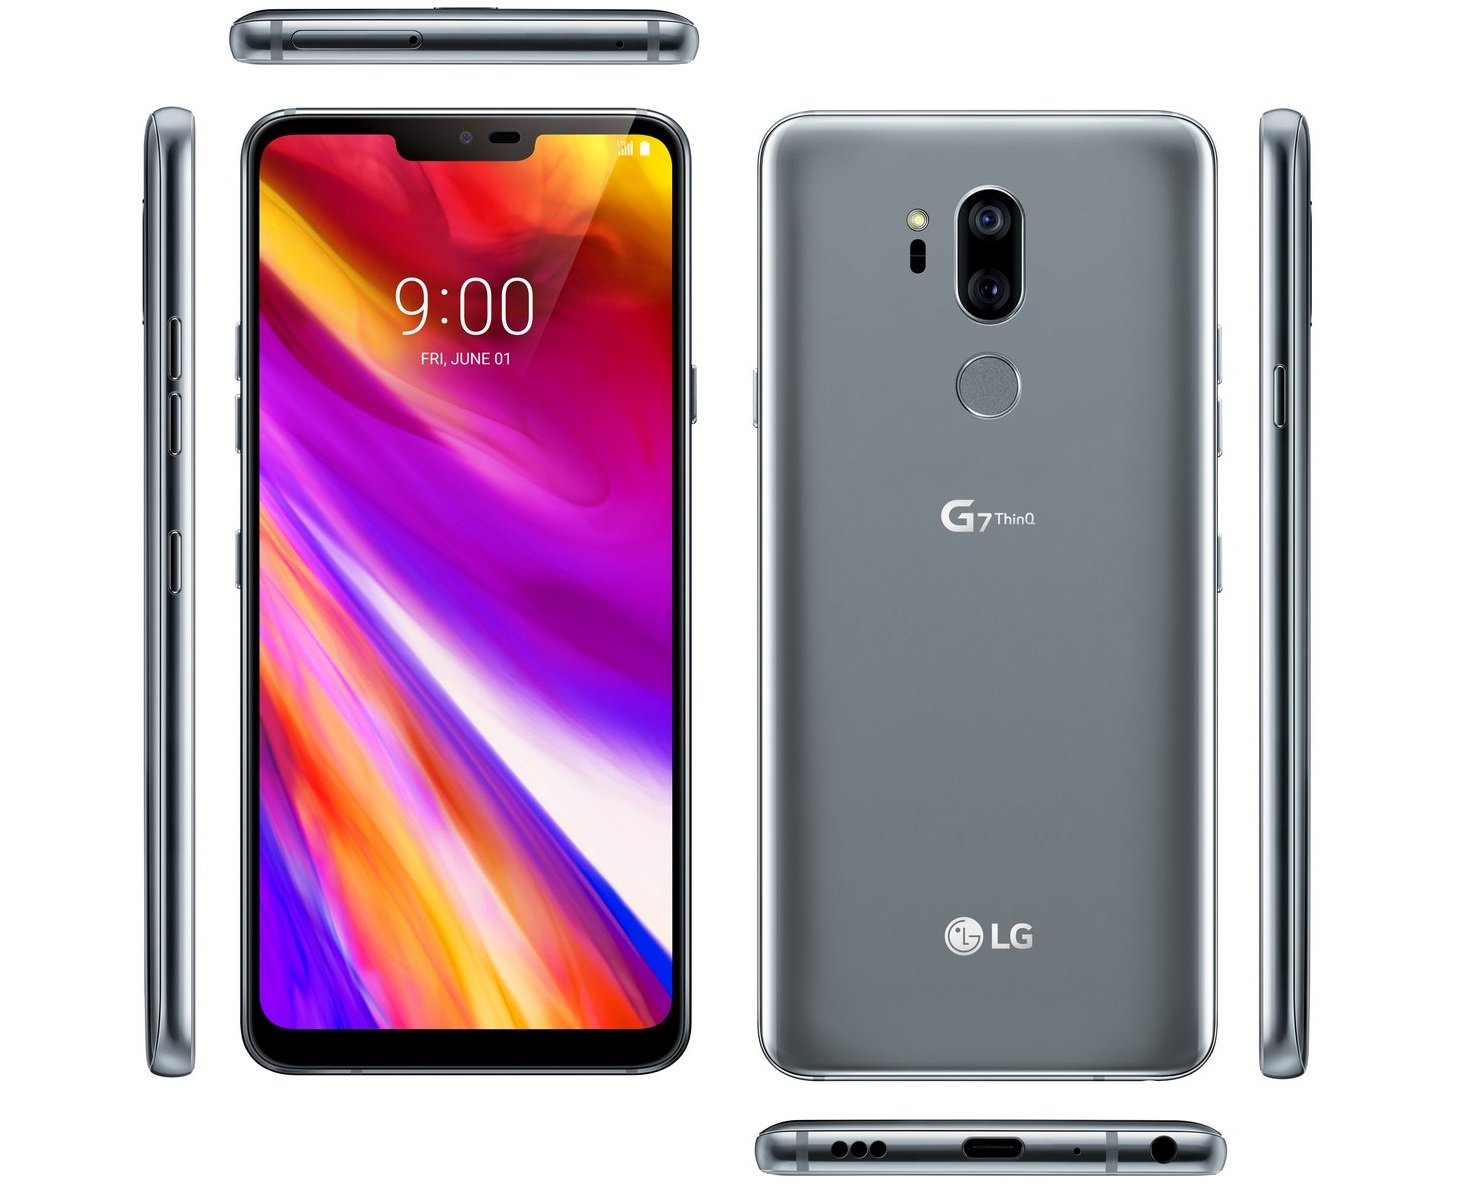 Νέες εικόνες αποκαλύπτουν το LG G7 ThinQ από όλες τις πλευρές πριν την επίσημη ανακοίνωση